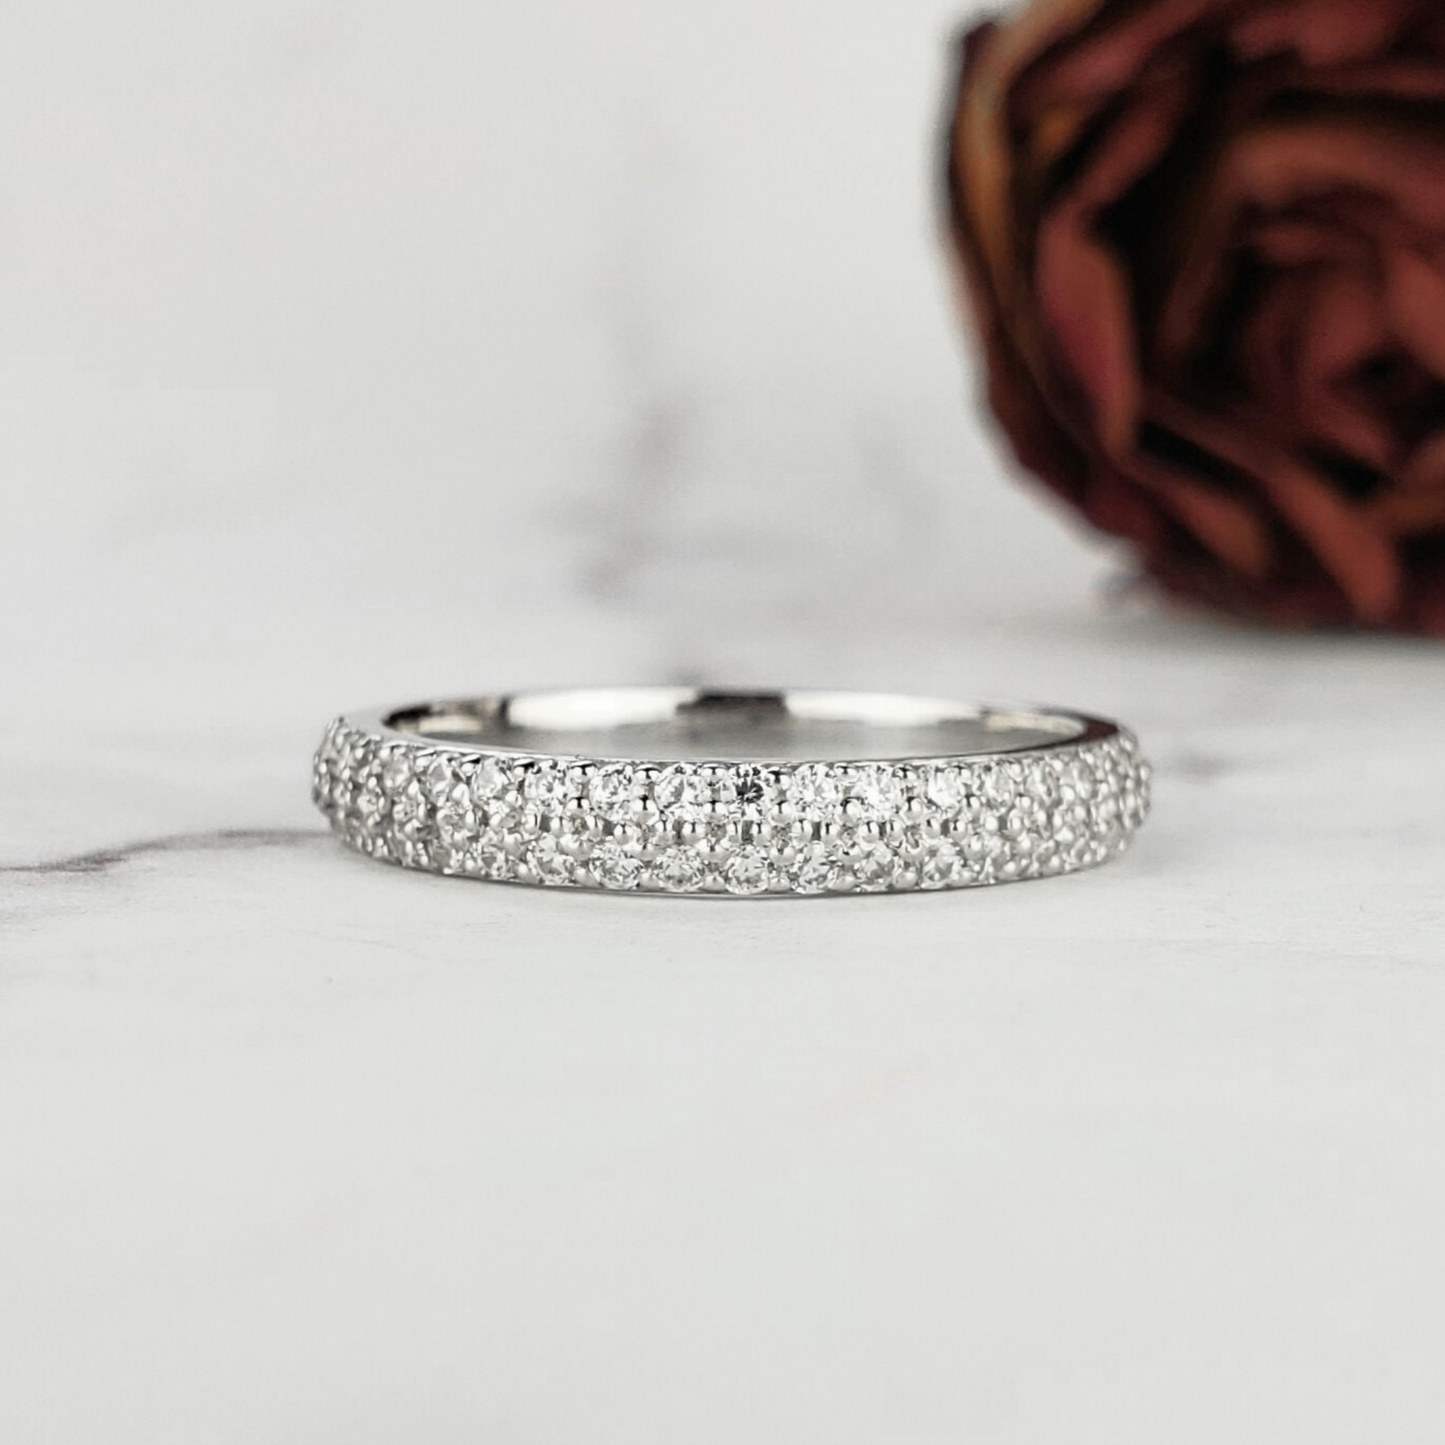 2 row diamond wedding ring